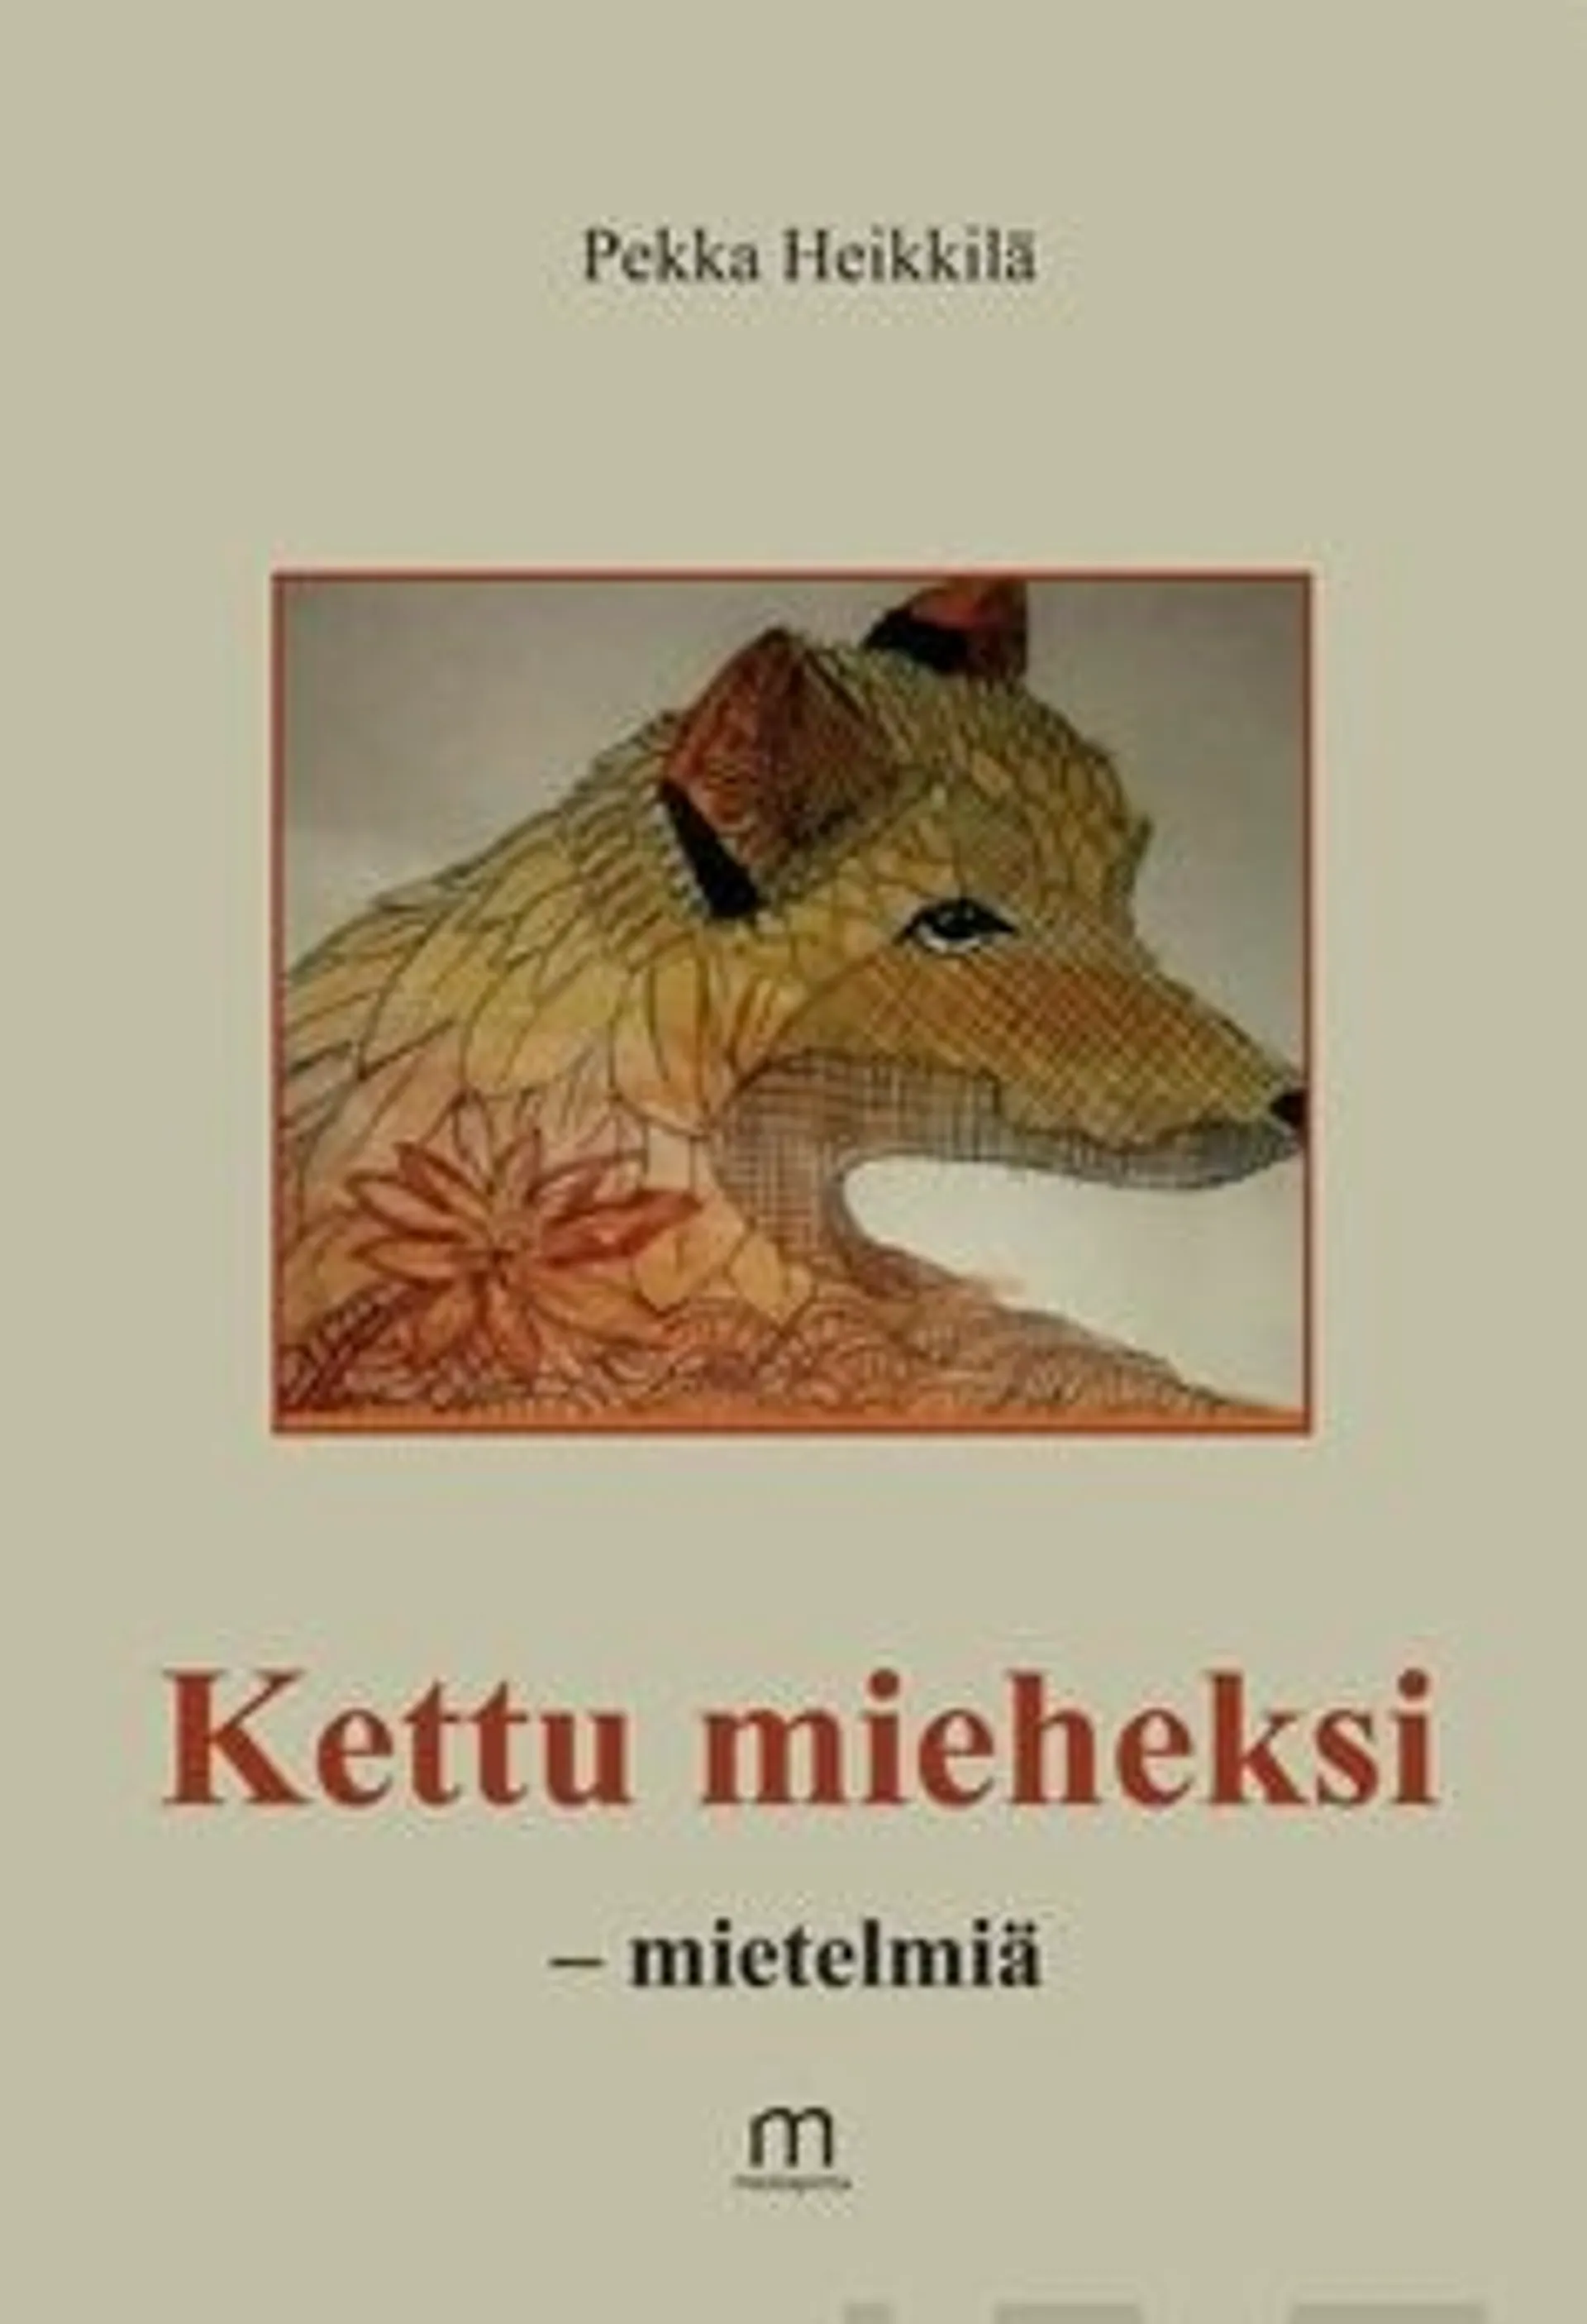 Heikkilä, Kettu mieheksi - mietelmiä